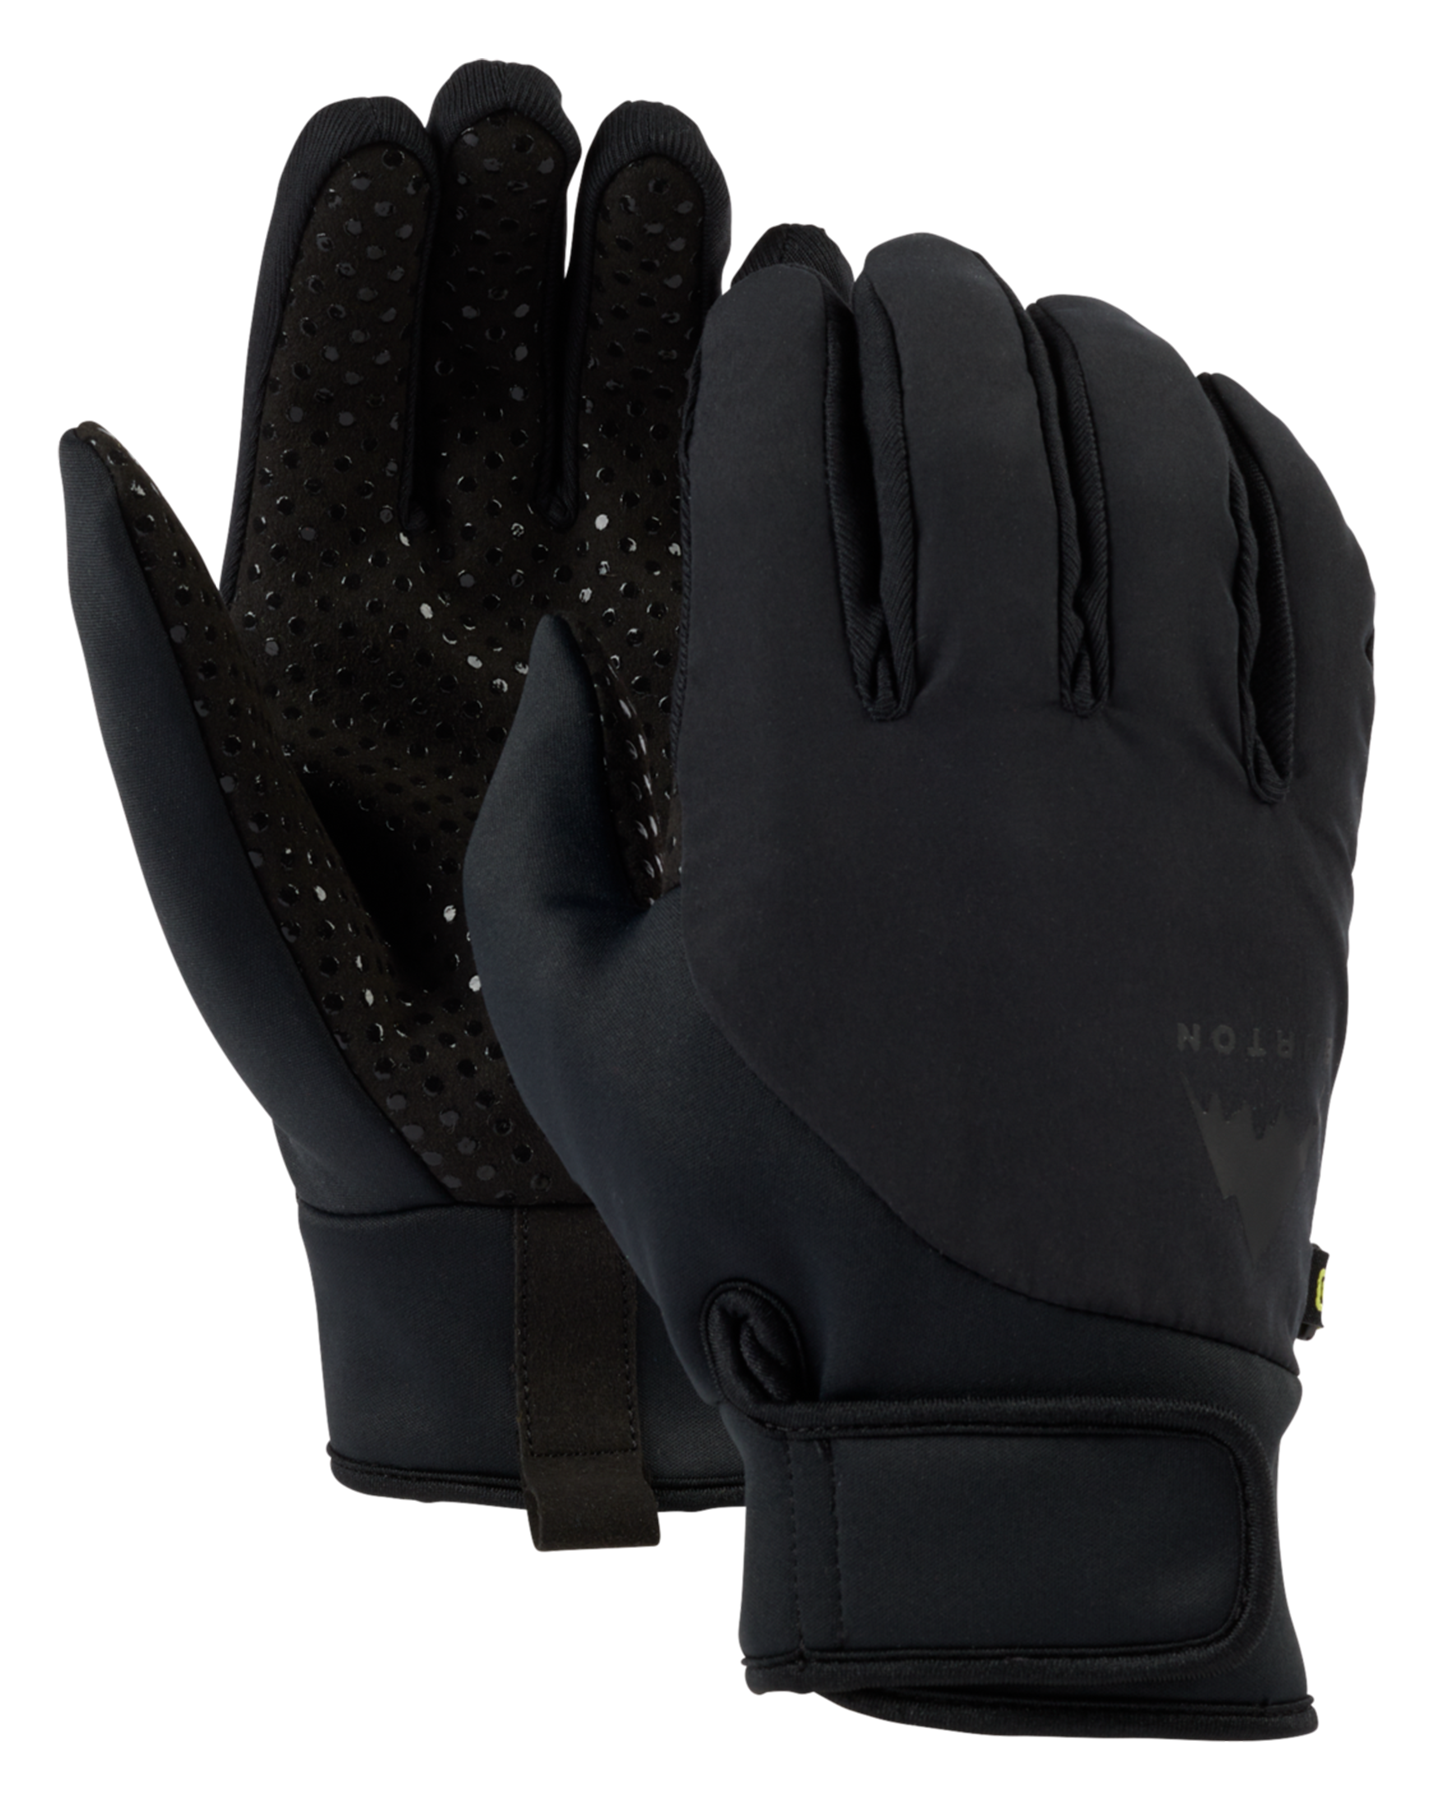 Burton Park Snow Gloves - True Black Men's Snow Gloves & Mittens - SnowSkiersWarehouse